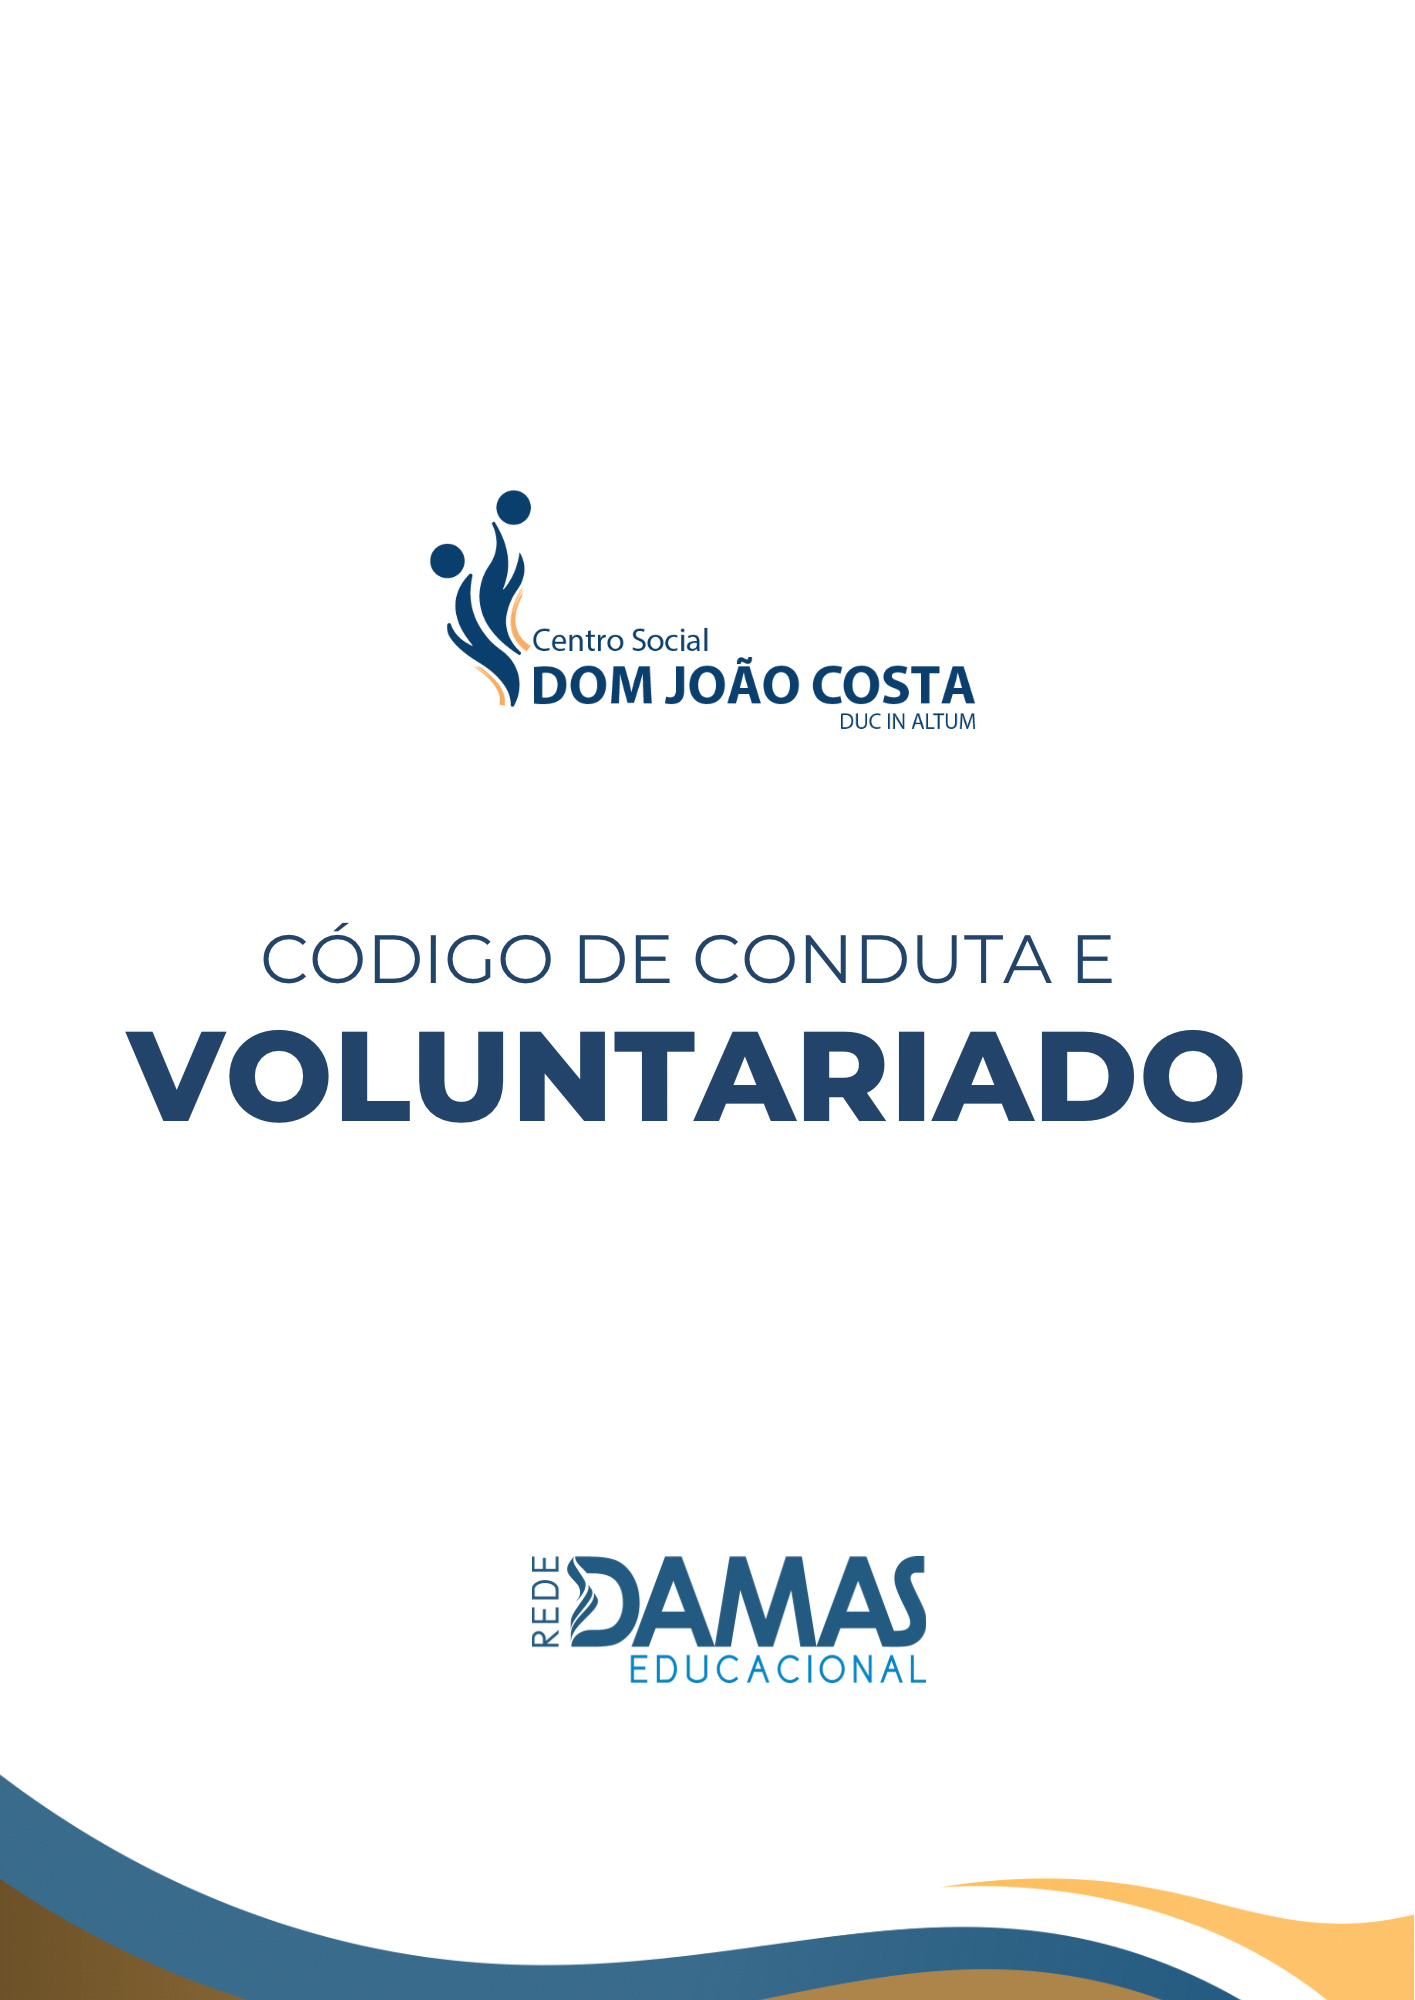 Voluntariado e Código de Conduta